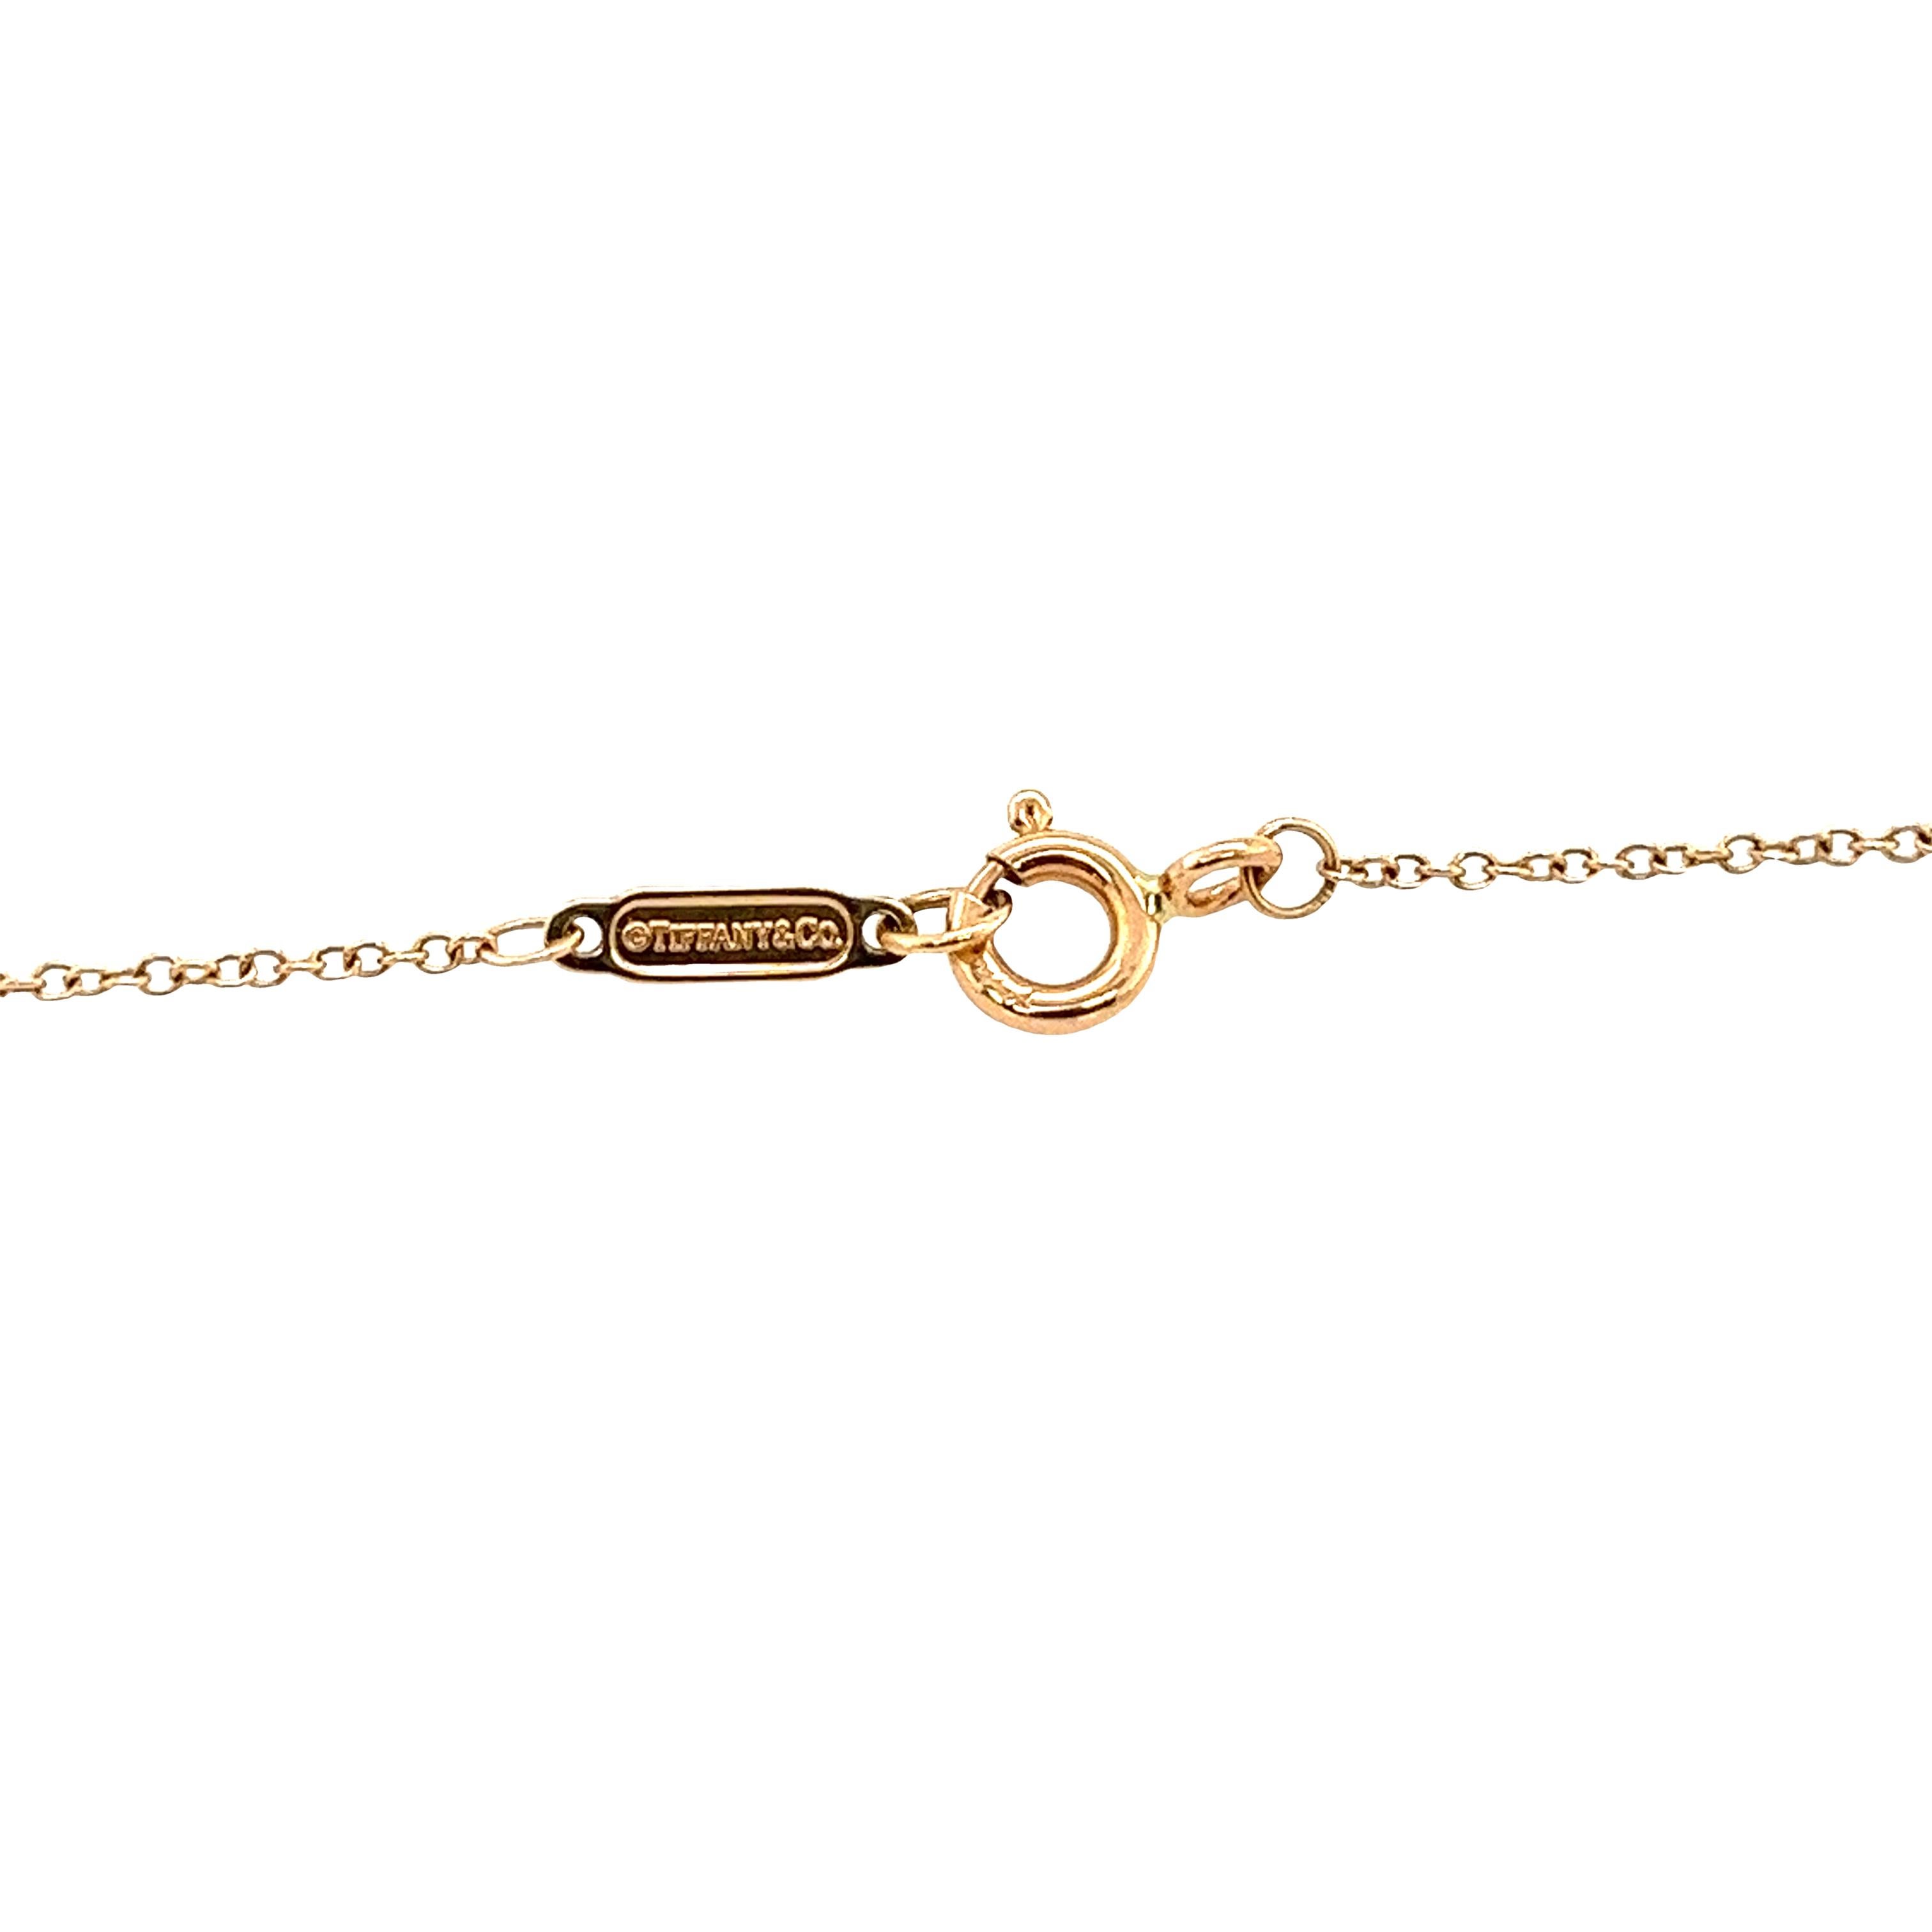 Ornez votre décolleté avec cette pièce captivante de Tiffany & Co. 
Ce collier promet non seulement d'attirer les regards, mais aussi de symboliser le goût raffiné et la grâce.
•	Total  Poids : 2.86 g
•	Poids total des diamants : 0,02ct
•	Couleur du